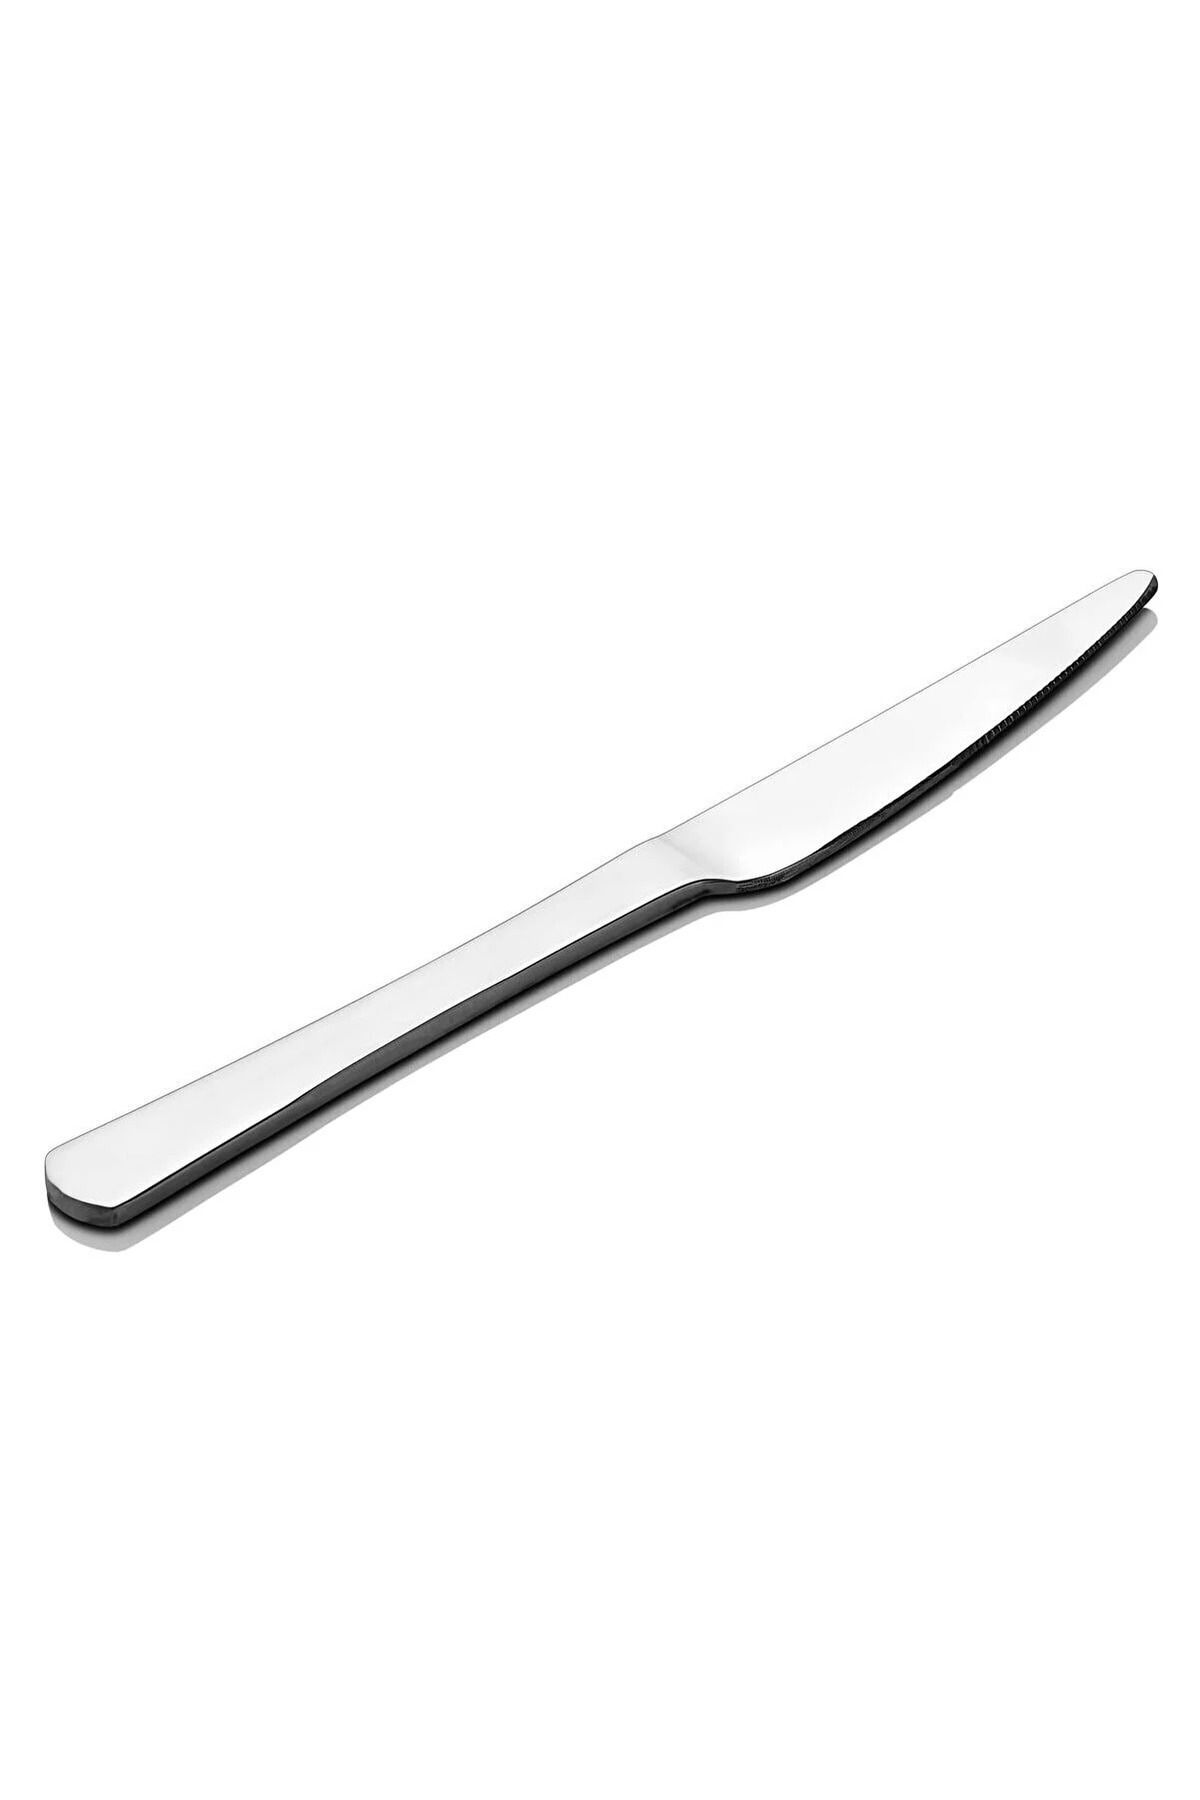 Yüsra Home 6 lı lüks yemek bıçağı paslanmaz çelik